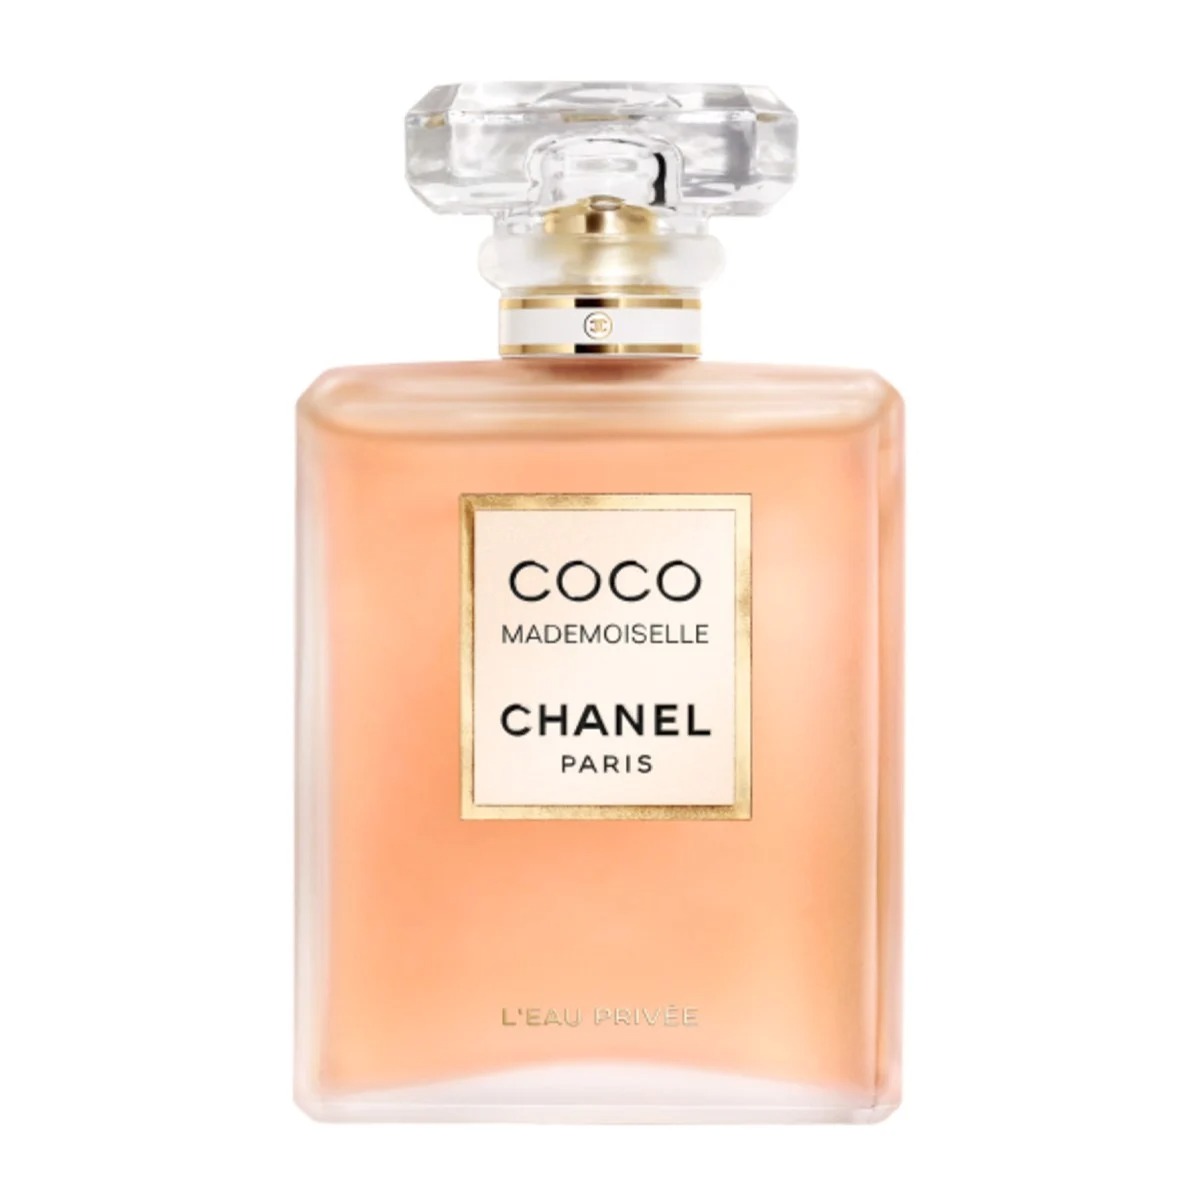 Chanel  COCO MADEMOISELLE  Les Essentiels Pour La Soirée Essentials For  The Evening  Luxury Fragrances  Avvenice